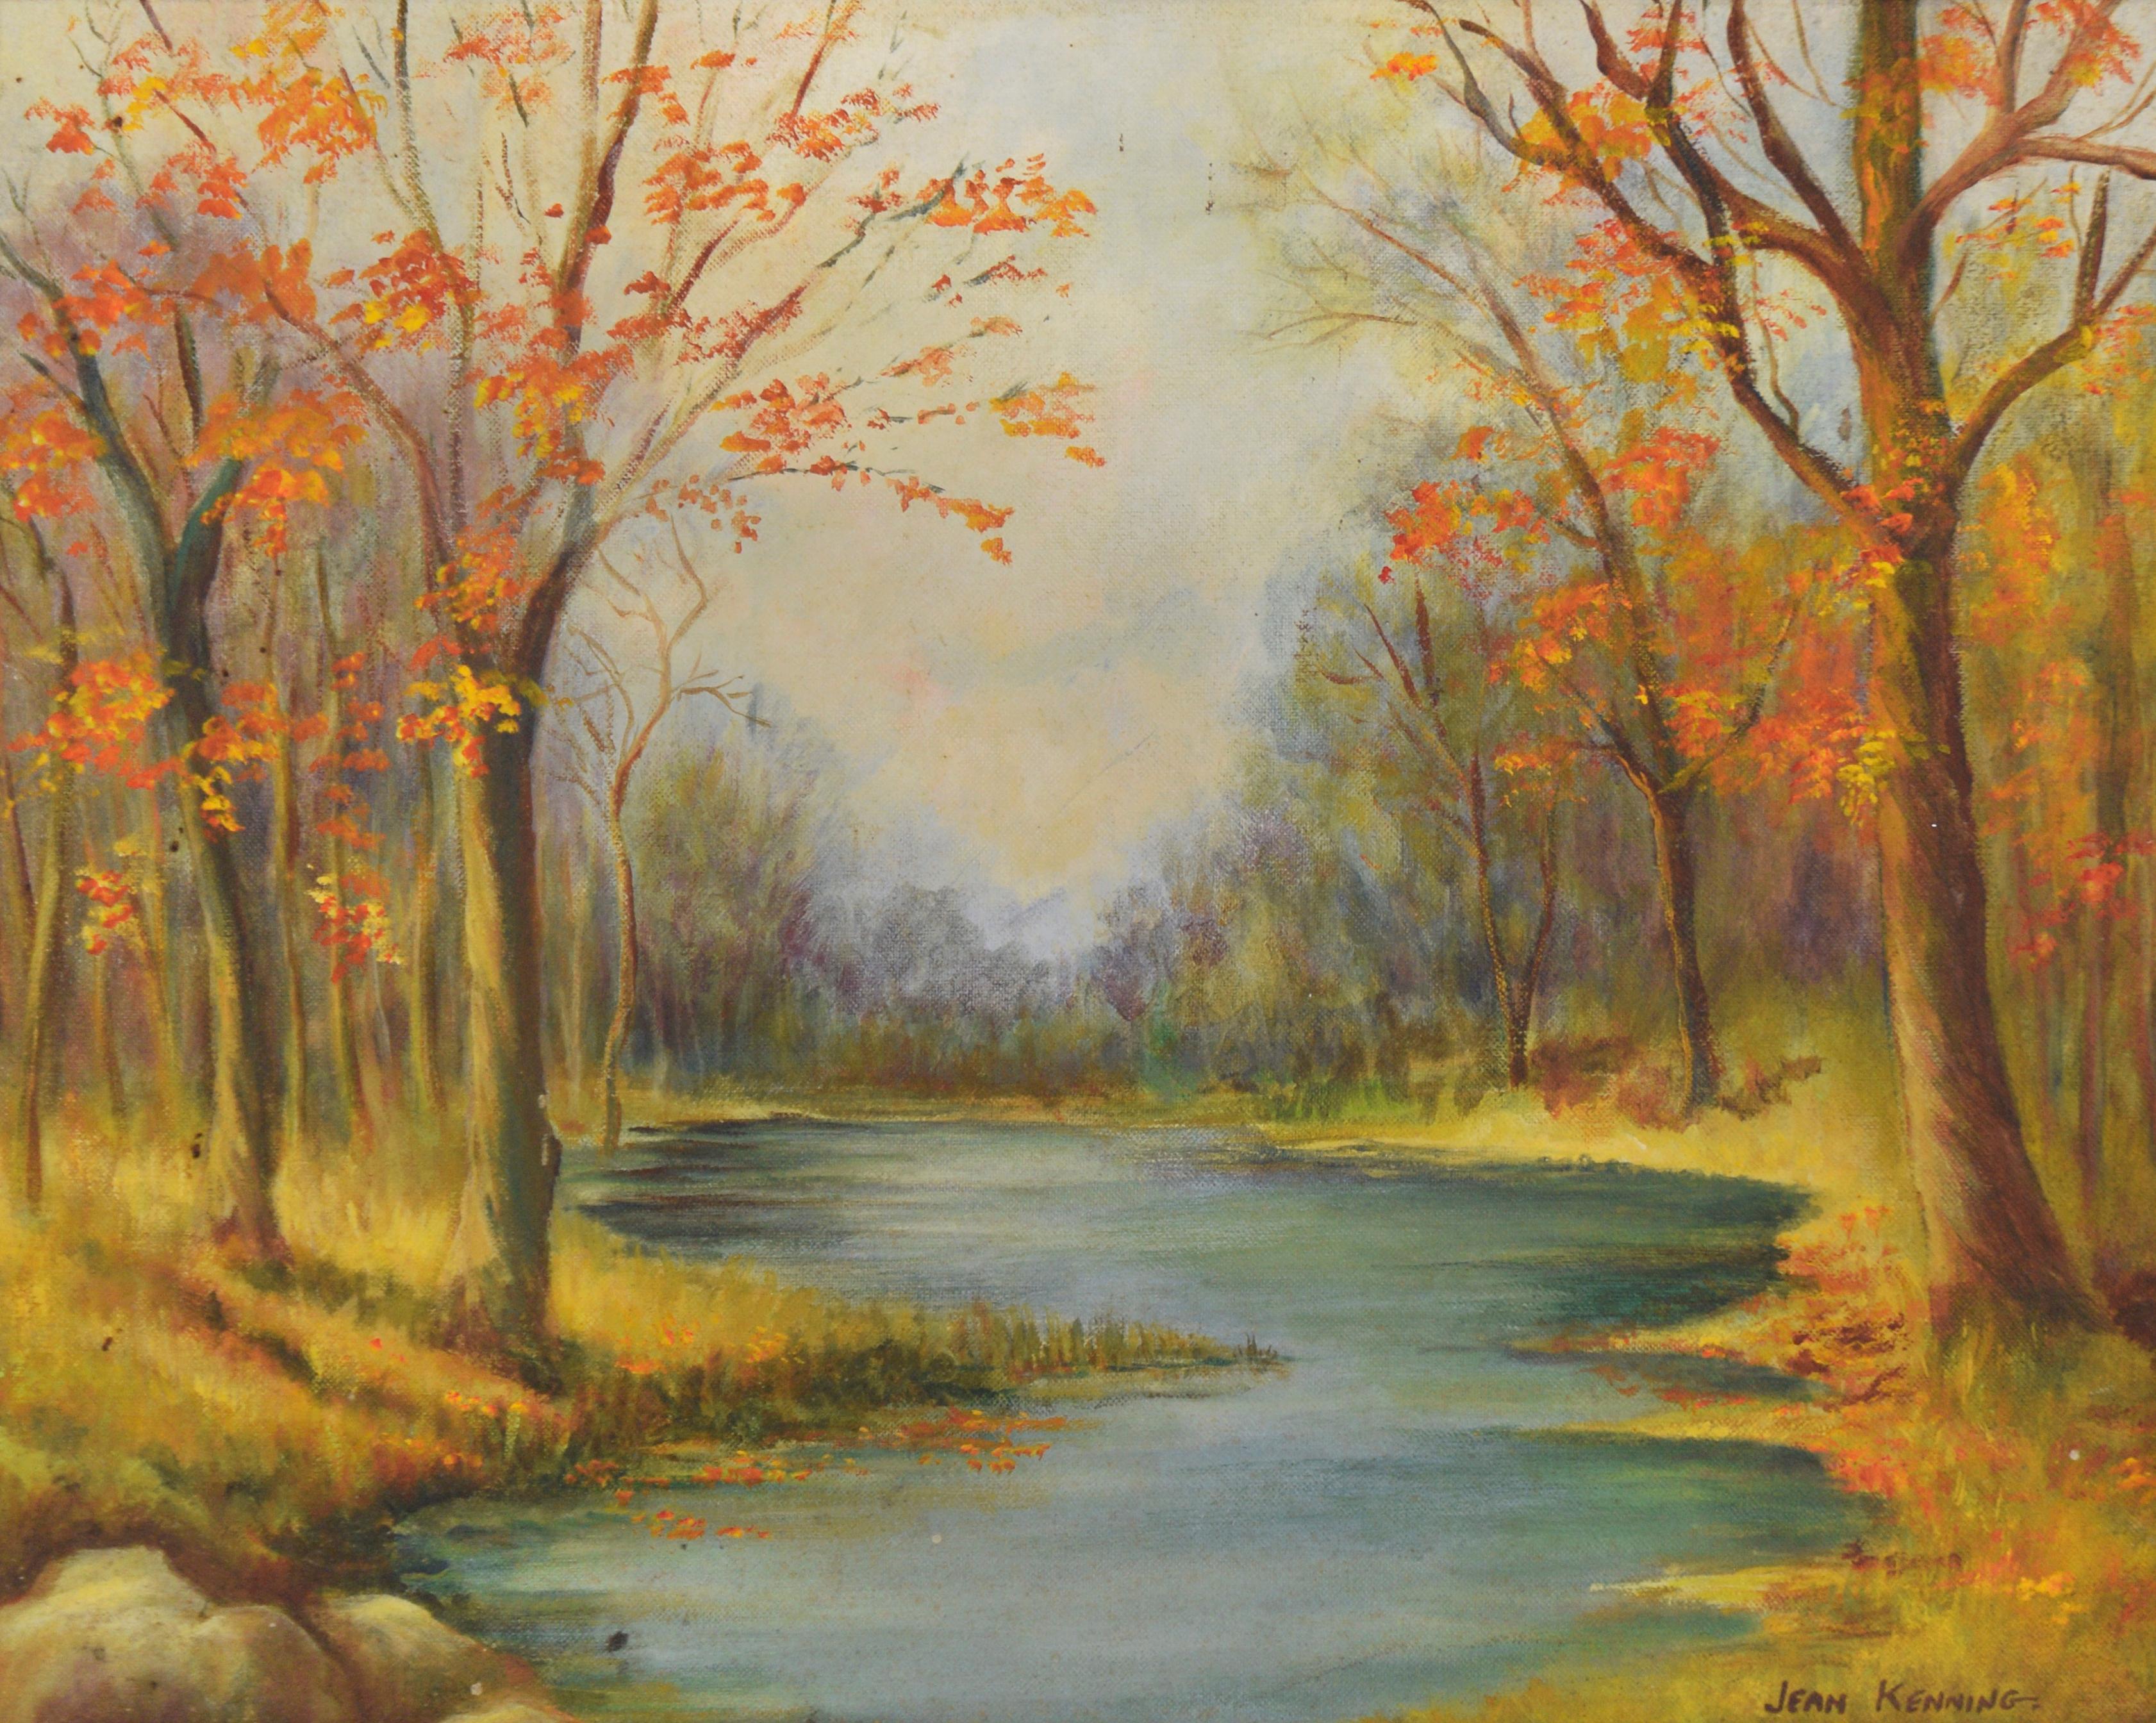 Herbst Stream - Original 1973 Öl-Landschaft – Painting von Jean Kenning